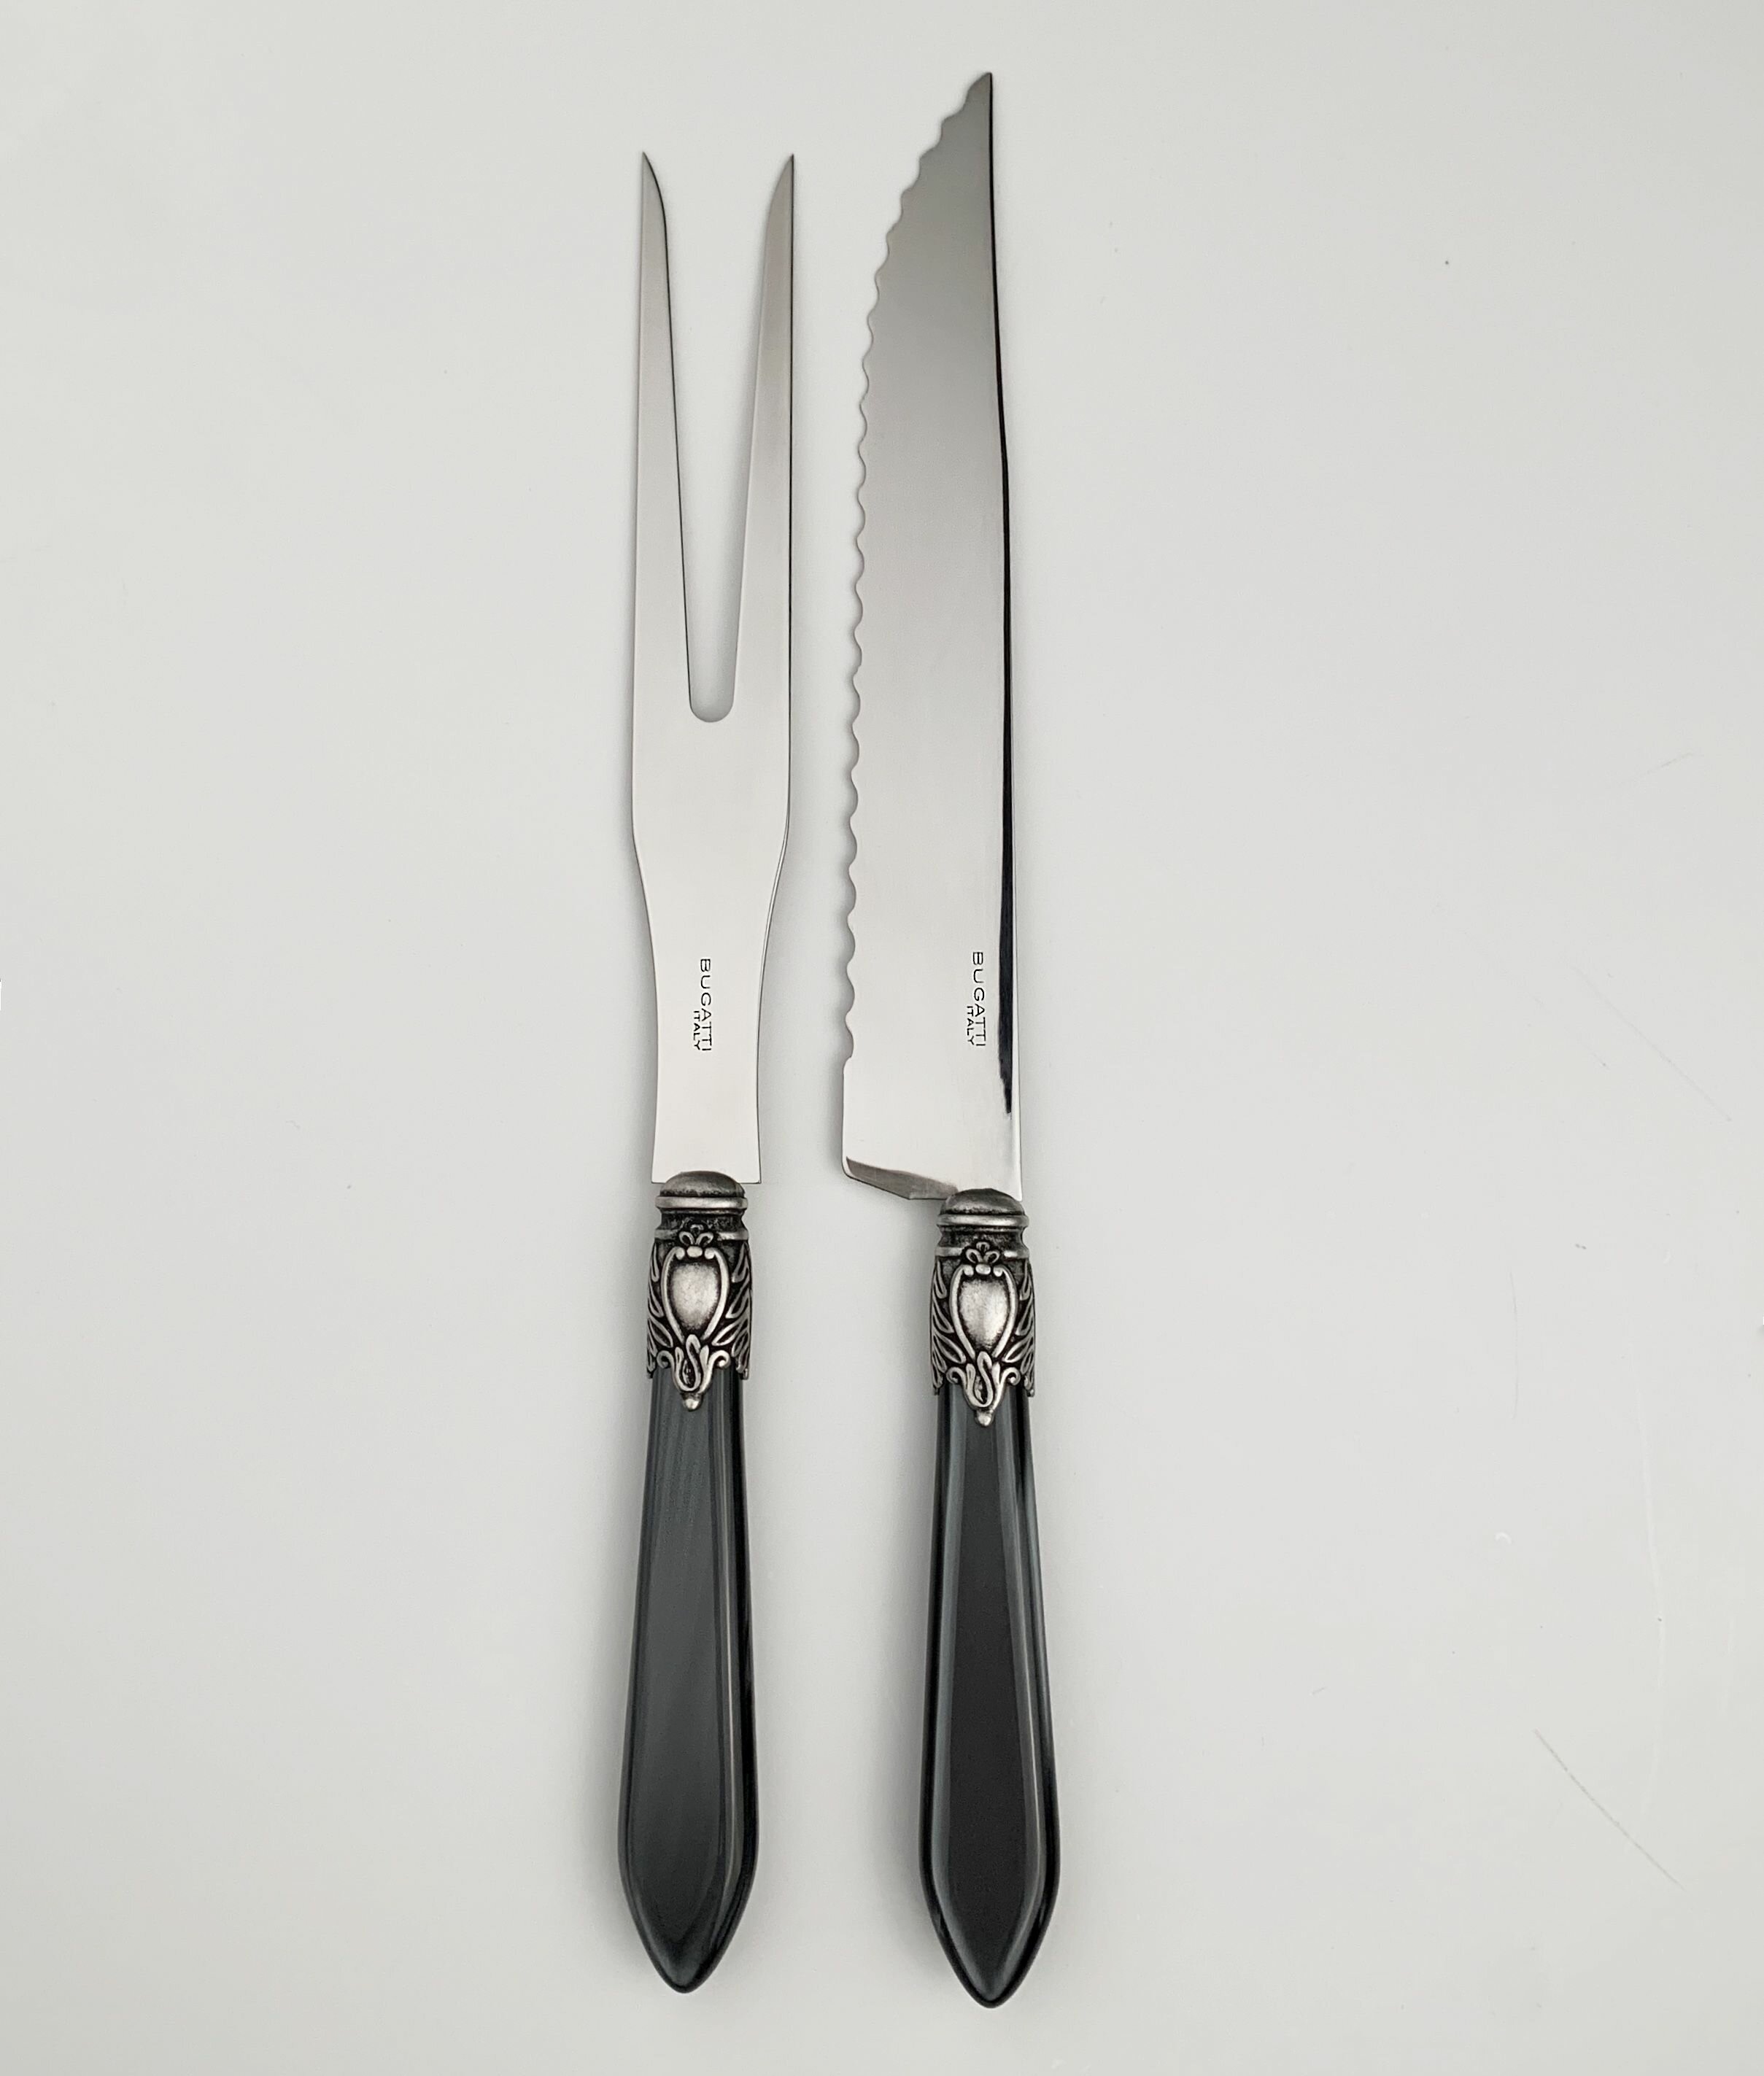 Elan 2-piece Carving Knife Set